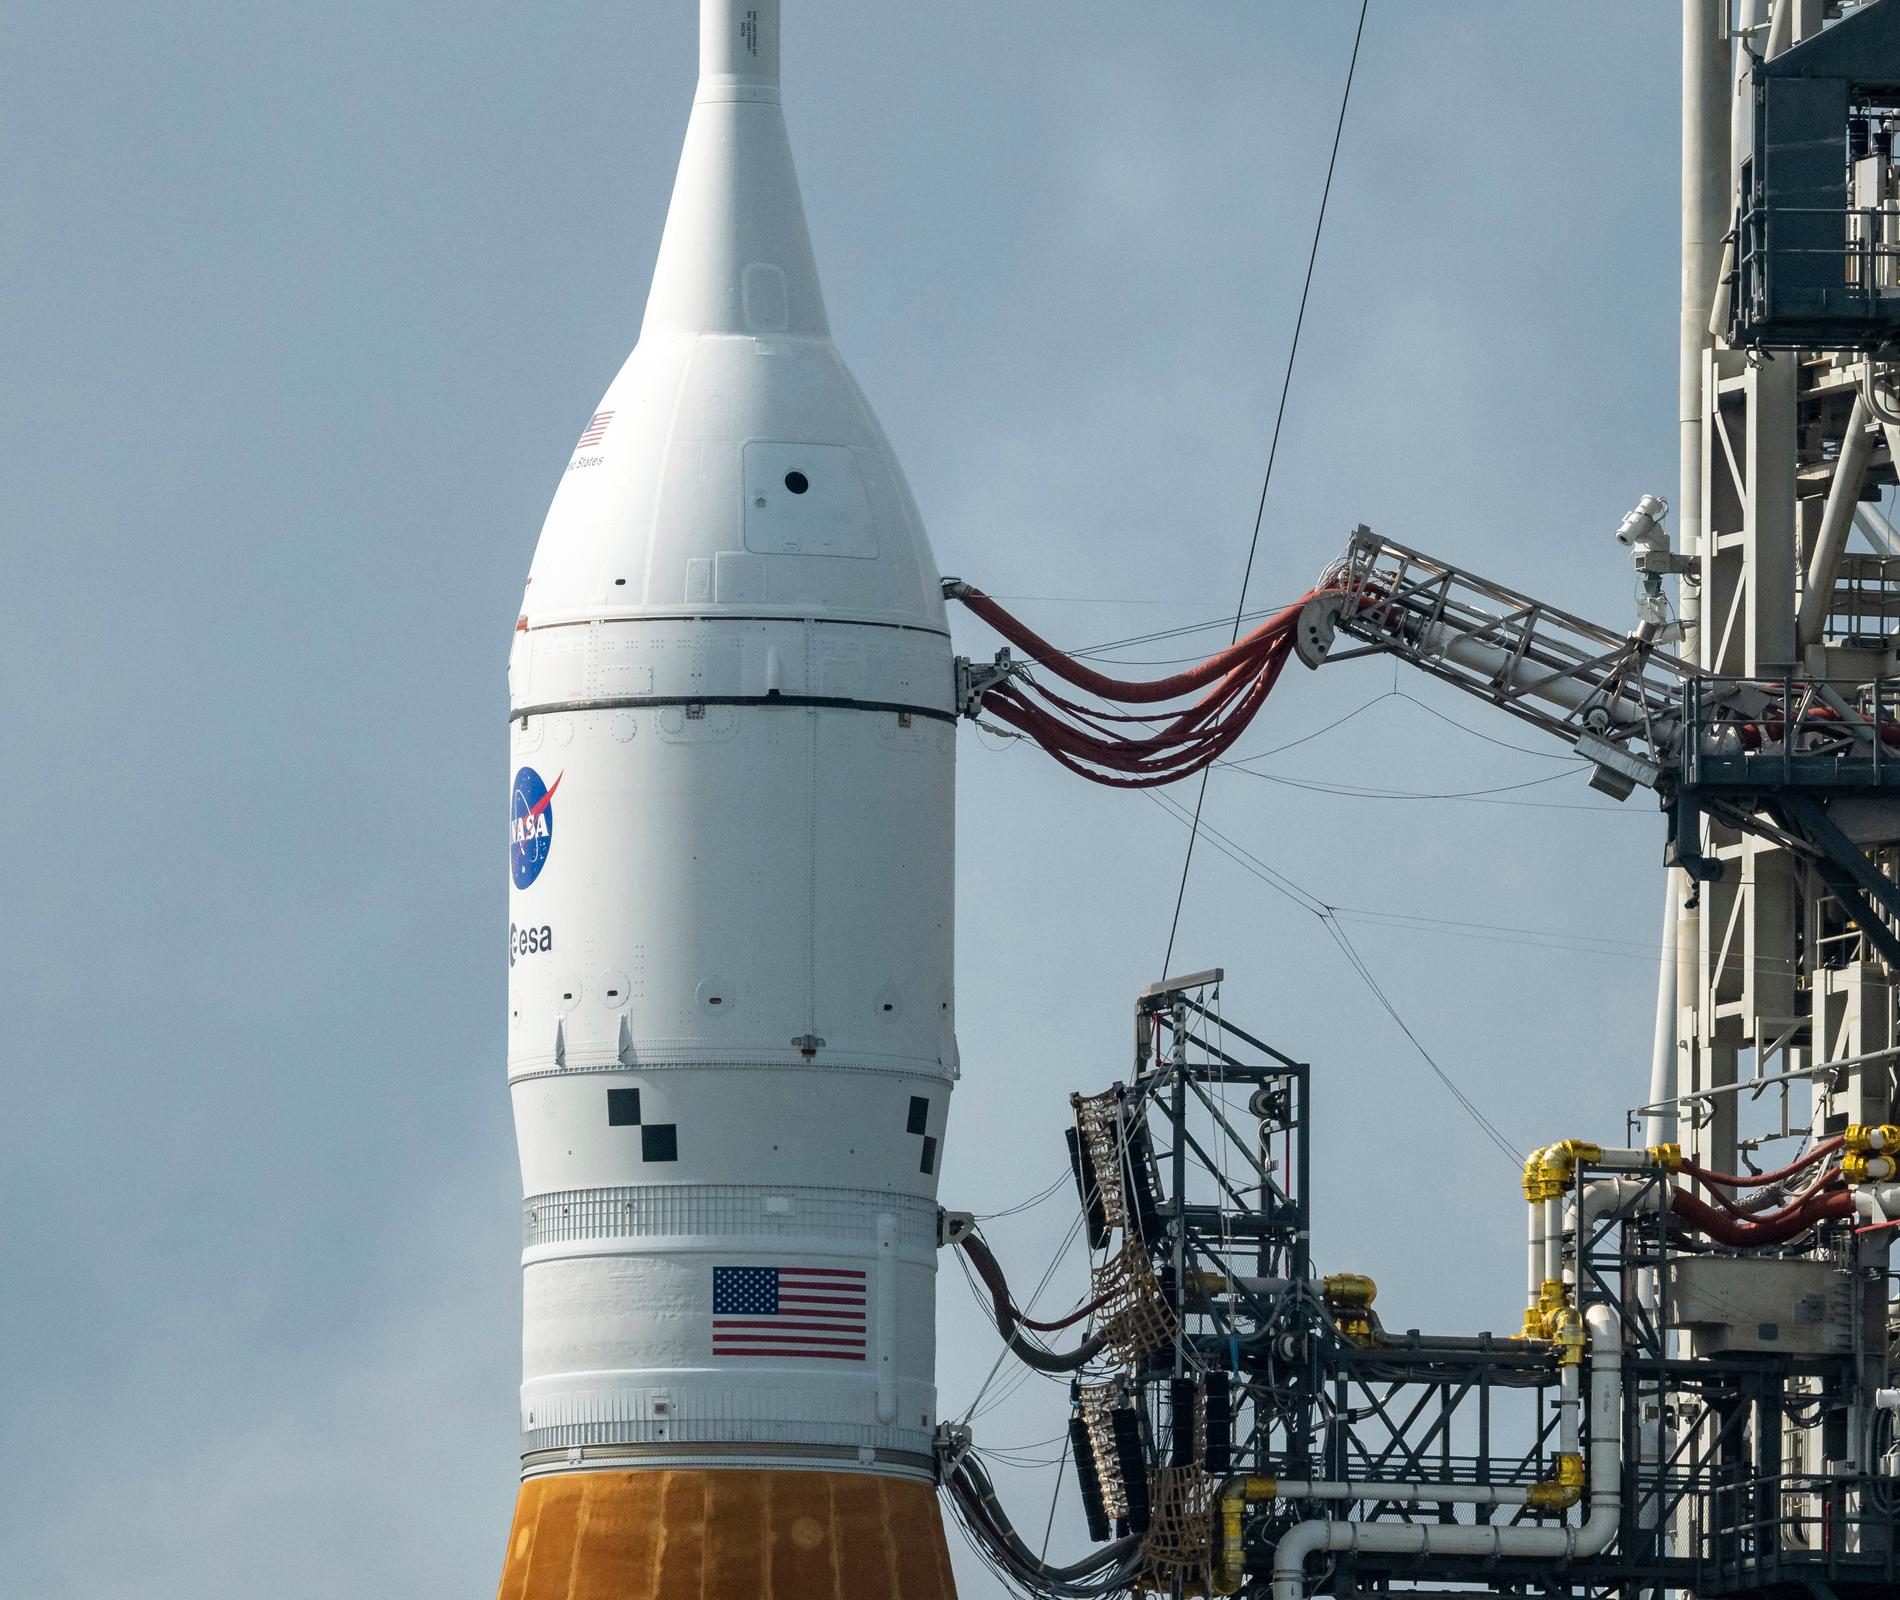 Närbild på raketen, med de amerikanska och europeiska rymdstyrelsernas loggor på sidan.